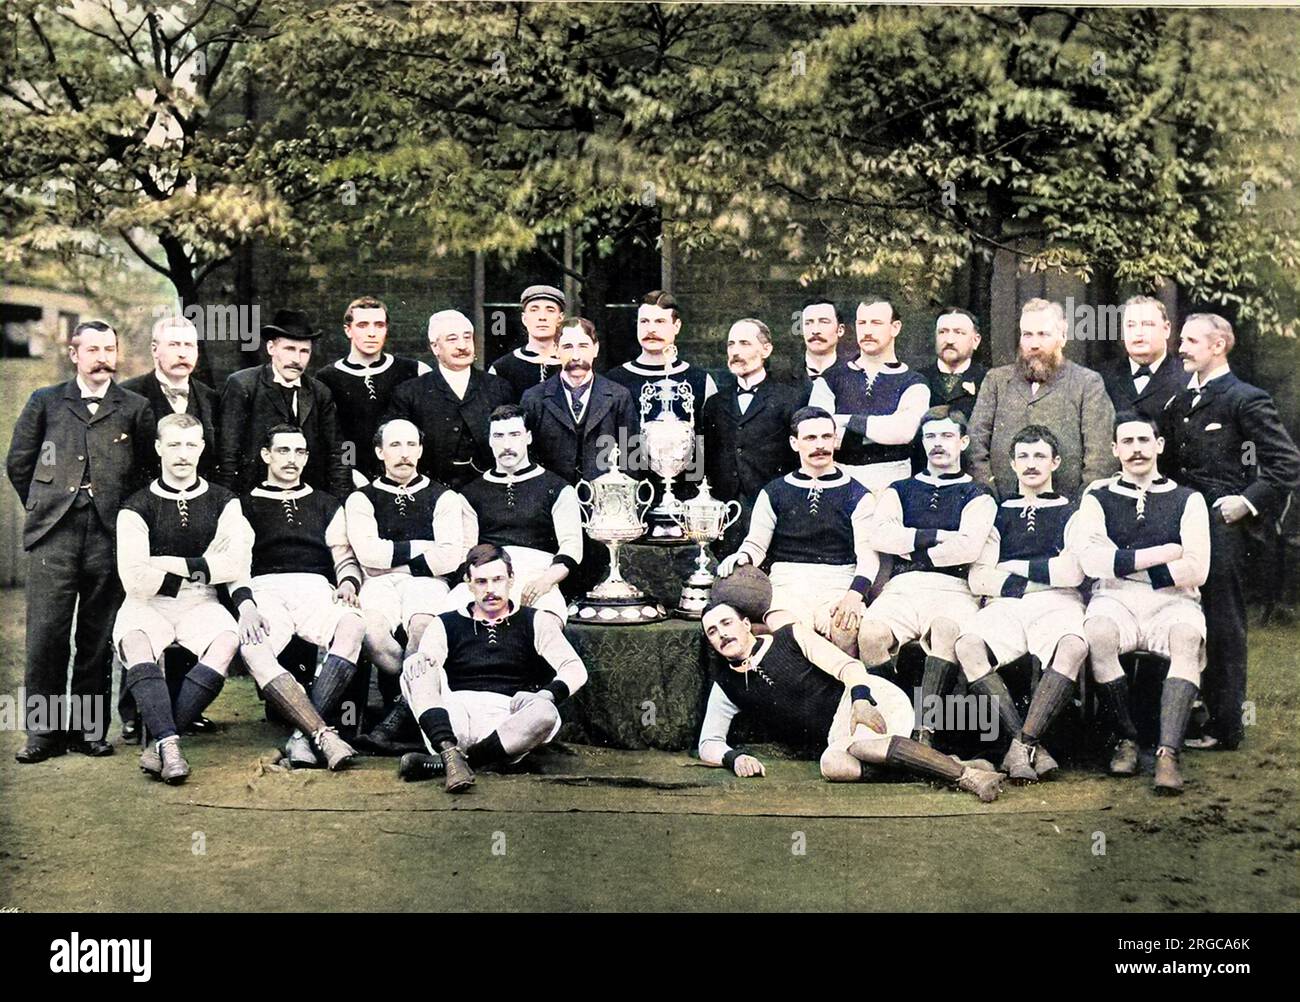 Aston Villa Football Club, mit dem Team für die Saison 1896-1897. Das Foto zeigt: Hintere Reihe, von links nach rechts: G.B. Ramsay (Sekretär), Dr. V.A. Jones, J. Grierson (Trainer), H. Spencer, F. Cooper, T. Wilkes, J. Ansell (Präsident), D. Hodgetts, J.E. Margoschis (Vorsitzender), C.S. Johnstone, J. Welford, ich Whitehouse, W. McGregor, J.T. Lees, F.W. Rinder. Mittlere Reihe, sitzend, von links nach rechts: R. Chatt, J.W. Crabtree, J. Reynolds, Jas. Cowan, J. Devey (Captain), F. Burton, D. Athersmith, J. Campbell. Erste Reihe, auf dem Boden, von links nach rechts: S. Smith, John Cowan. Stockfoto